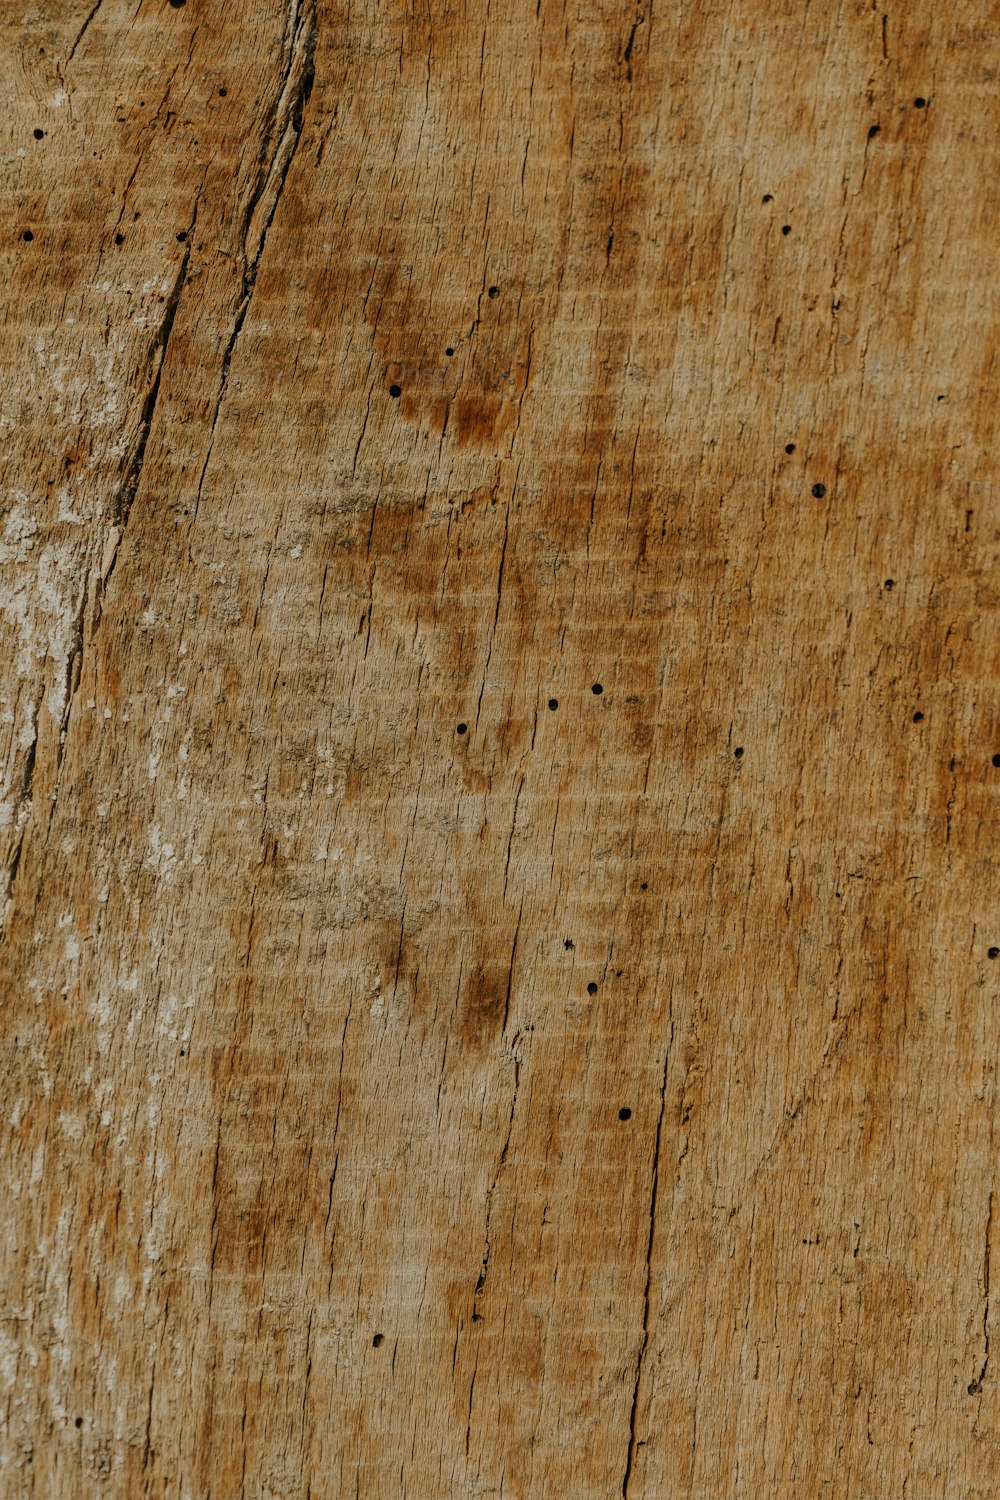 Đồ gỗ: Với độ sắc nét chi tiết vô cùng độc đáo, hình ảnh của đồ gỗ sẽ khiến bạn phải khâm phục về tài năng của những nghệ nhân đã tạo ra chúng. Với chất liệu gỗ tự nhiên và độ bền cao, bạn sẽ cảm nhận được sự ấm áp và sang trọng mà chỉ đồ gỗ mới có thể mang đến.